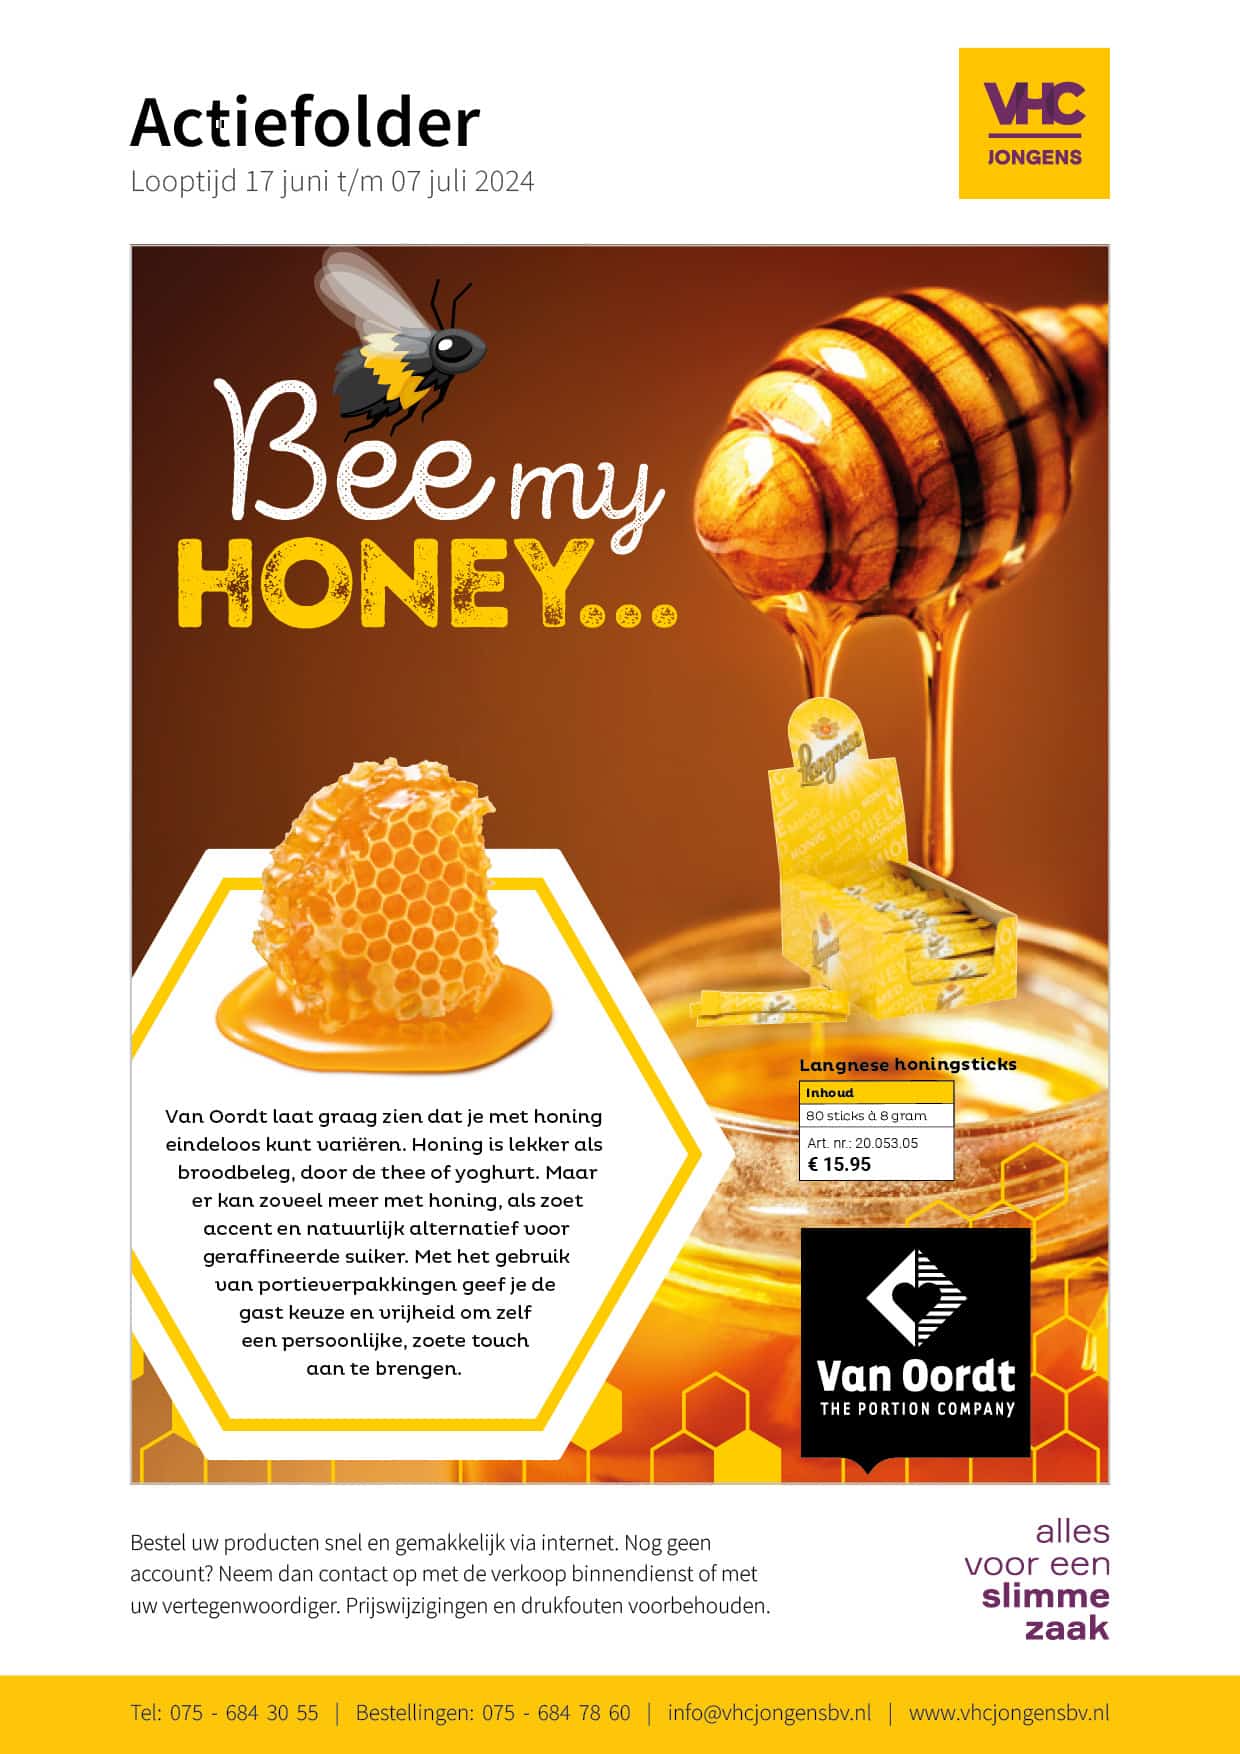 Van Oordt honing